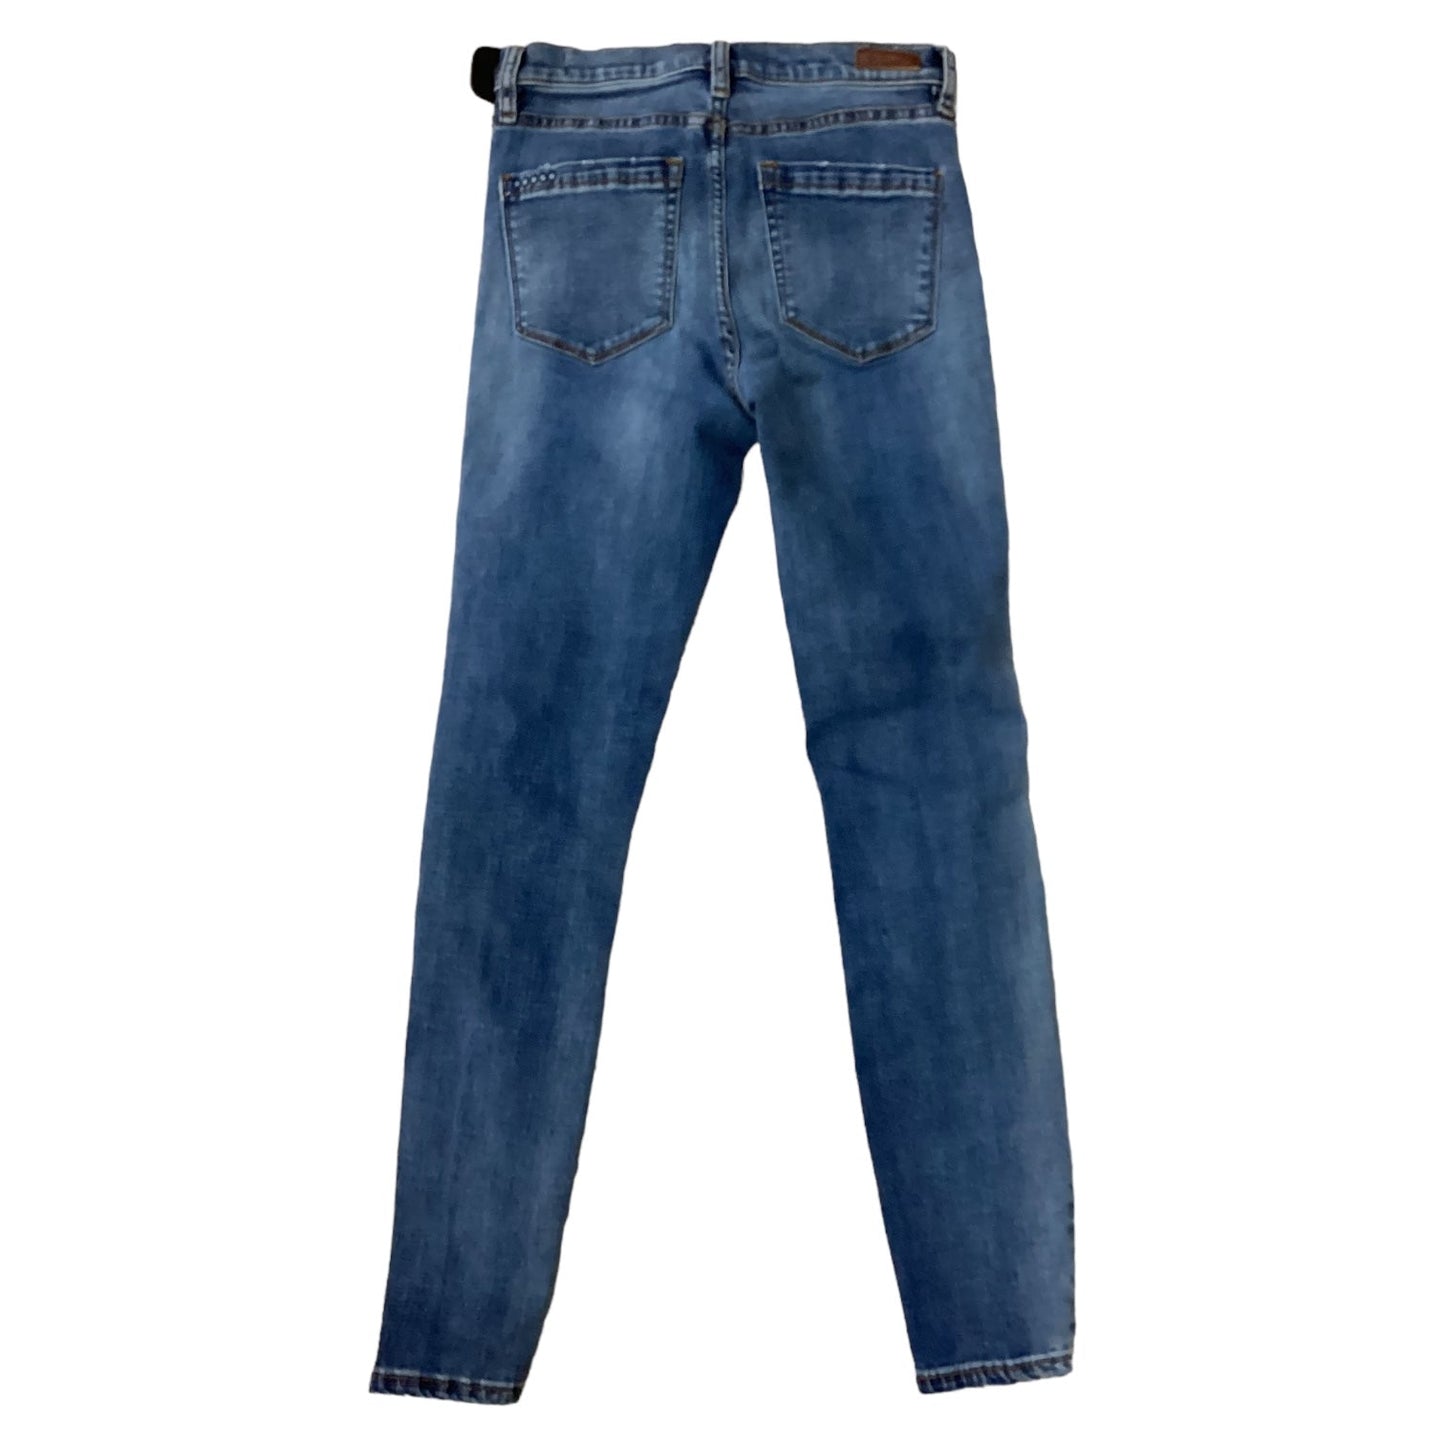 Jeans Skinny By Blanknyc  Size: 4